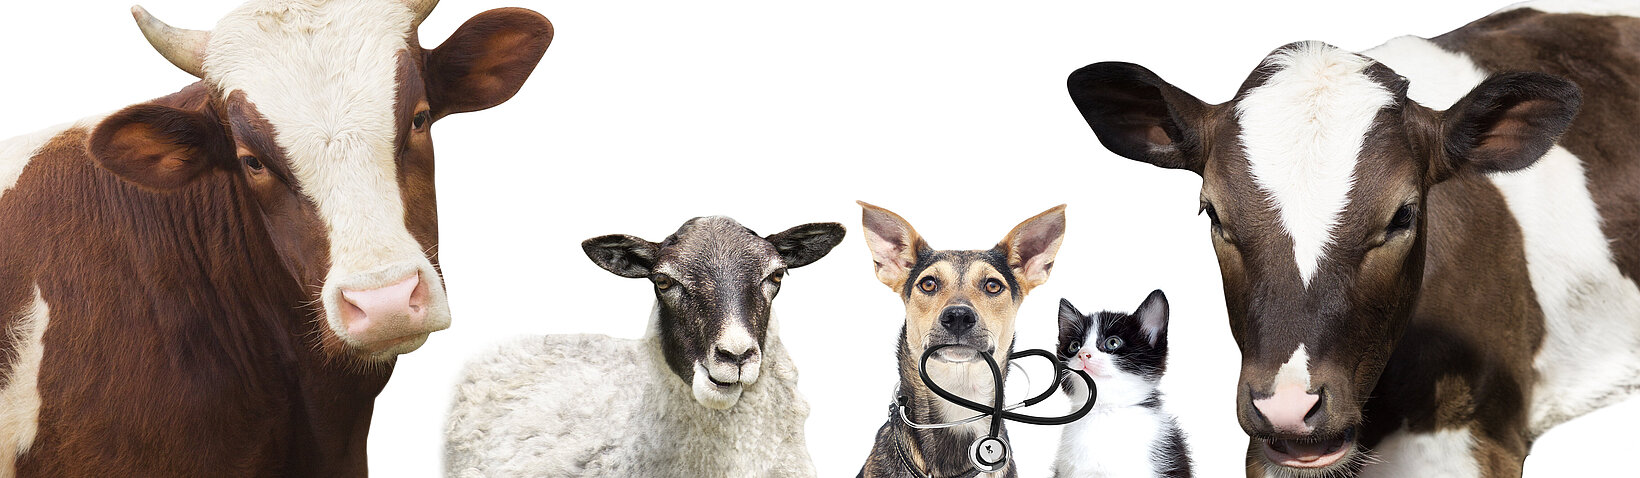 in einr Reihe: zwei Kühe, ein Schaf, ein Hund mit Stethoskop und eine Katze 